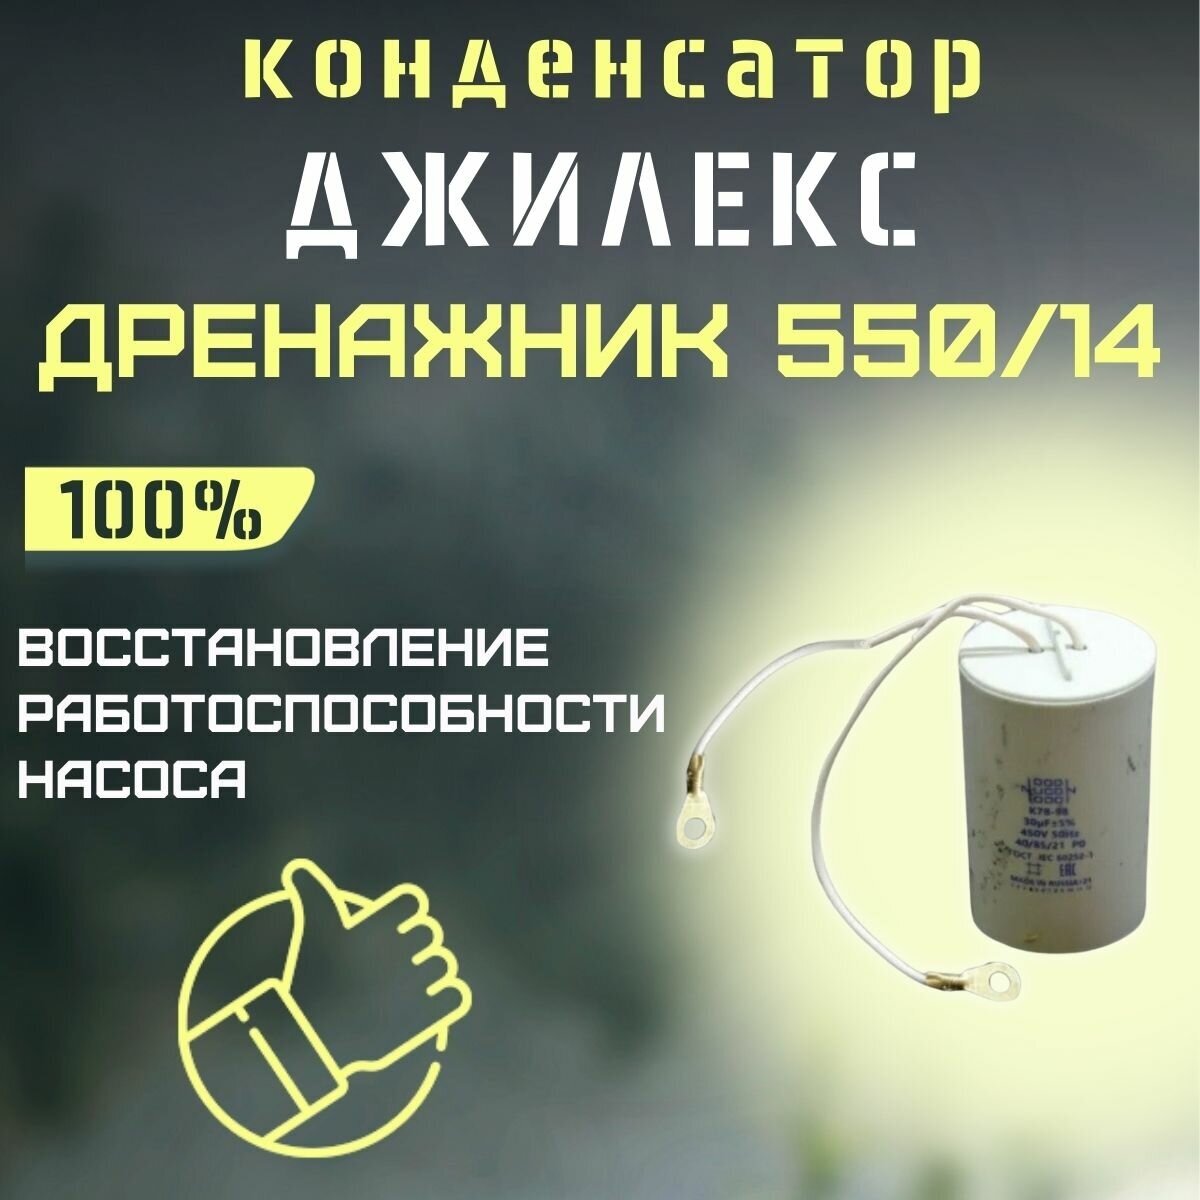 Конденсатор для Джилекс Дренажник 550/14 (kondDrenazhnik55014)